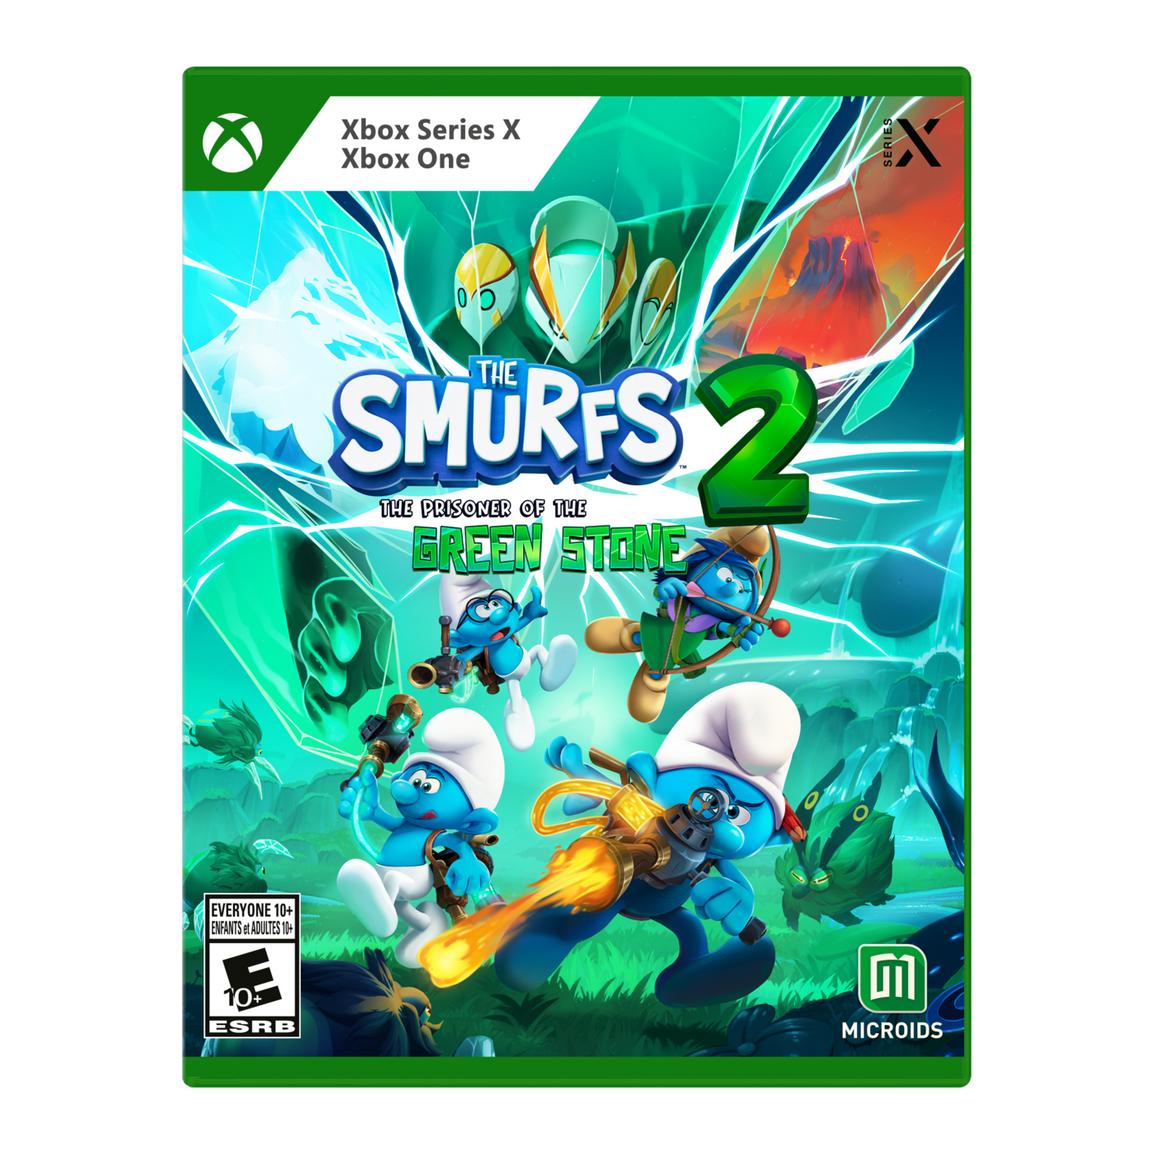 Видеоигра The Smurfs 2: Prisoner of the Green Stone - Xbox Series X, Xbox One видеоигра the smurfs 2 prisoner of the green stone playstation 4